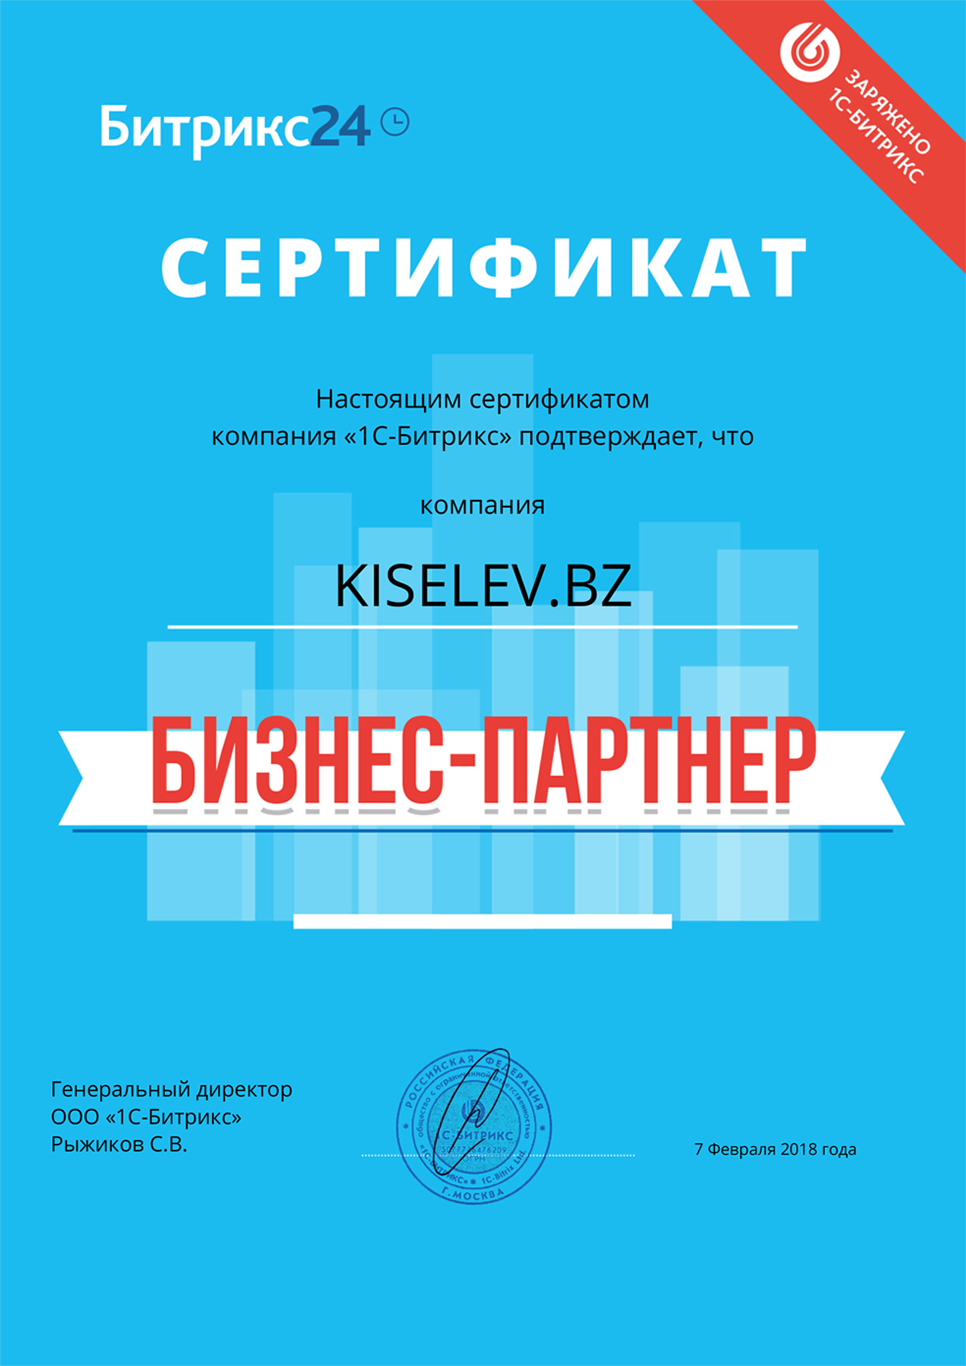 Сертификат партнёра по АМОСРМ в Зеленокумске